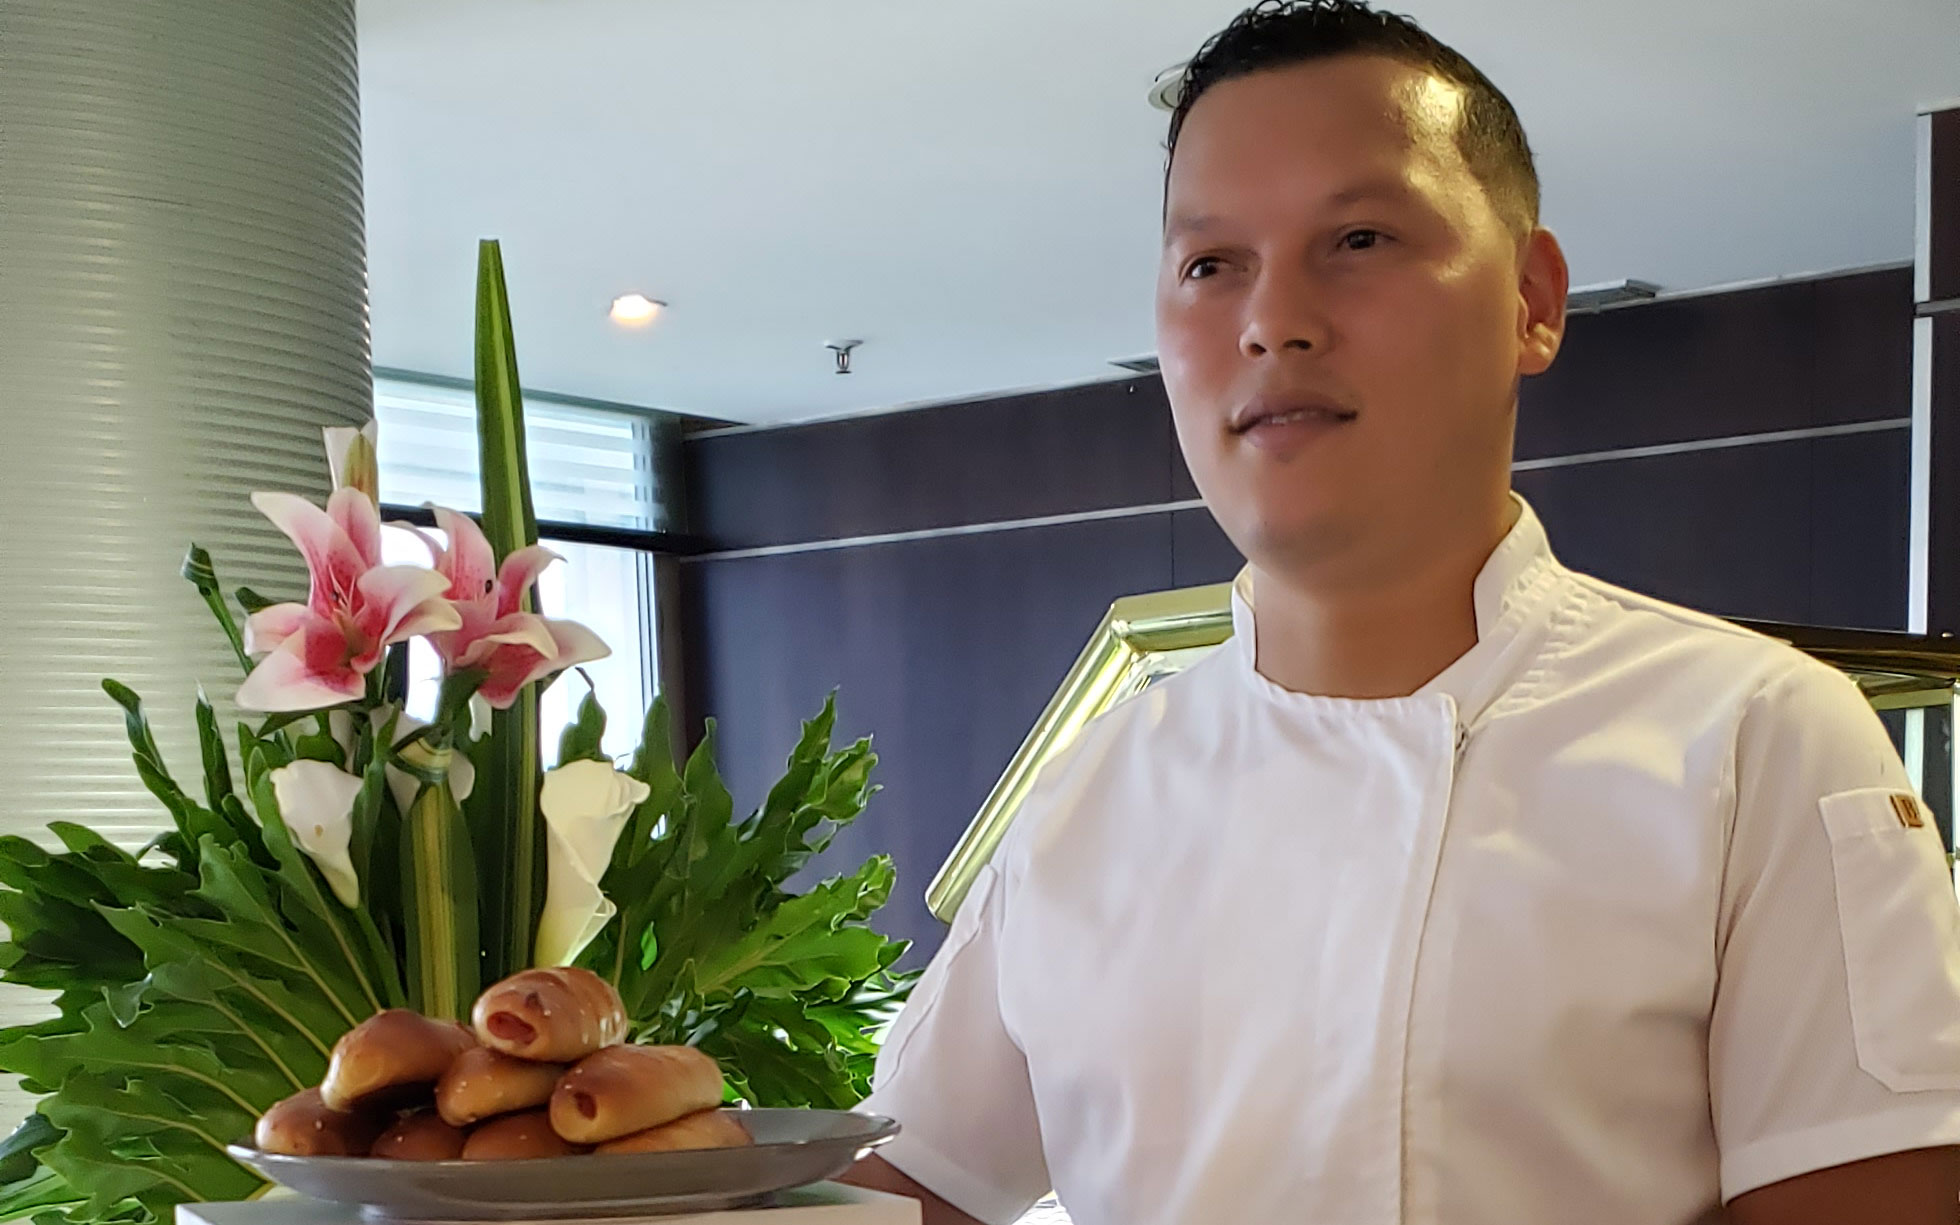 El chef Elvis Rojas, ganador del segundo lugar en el concurso gastronómico "El mejor cachito de Caracas".